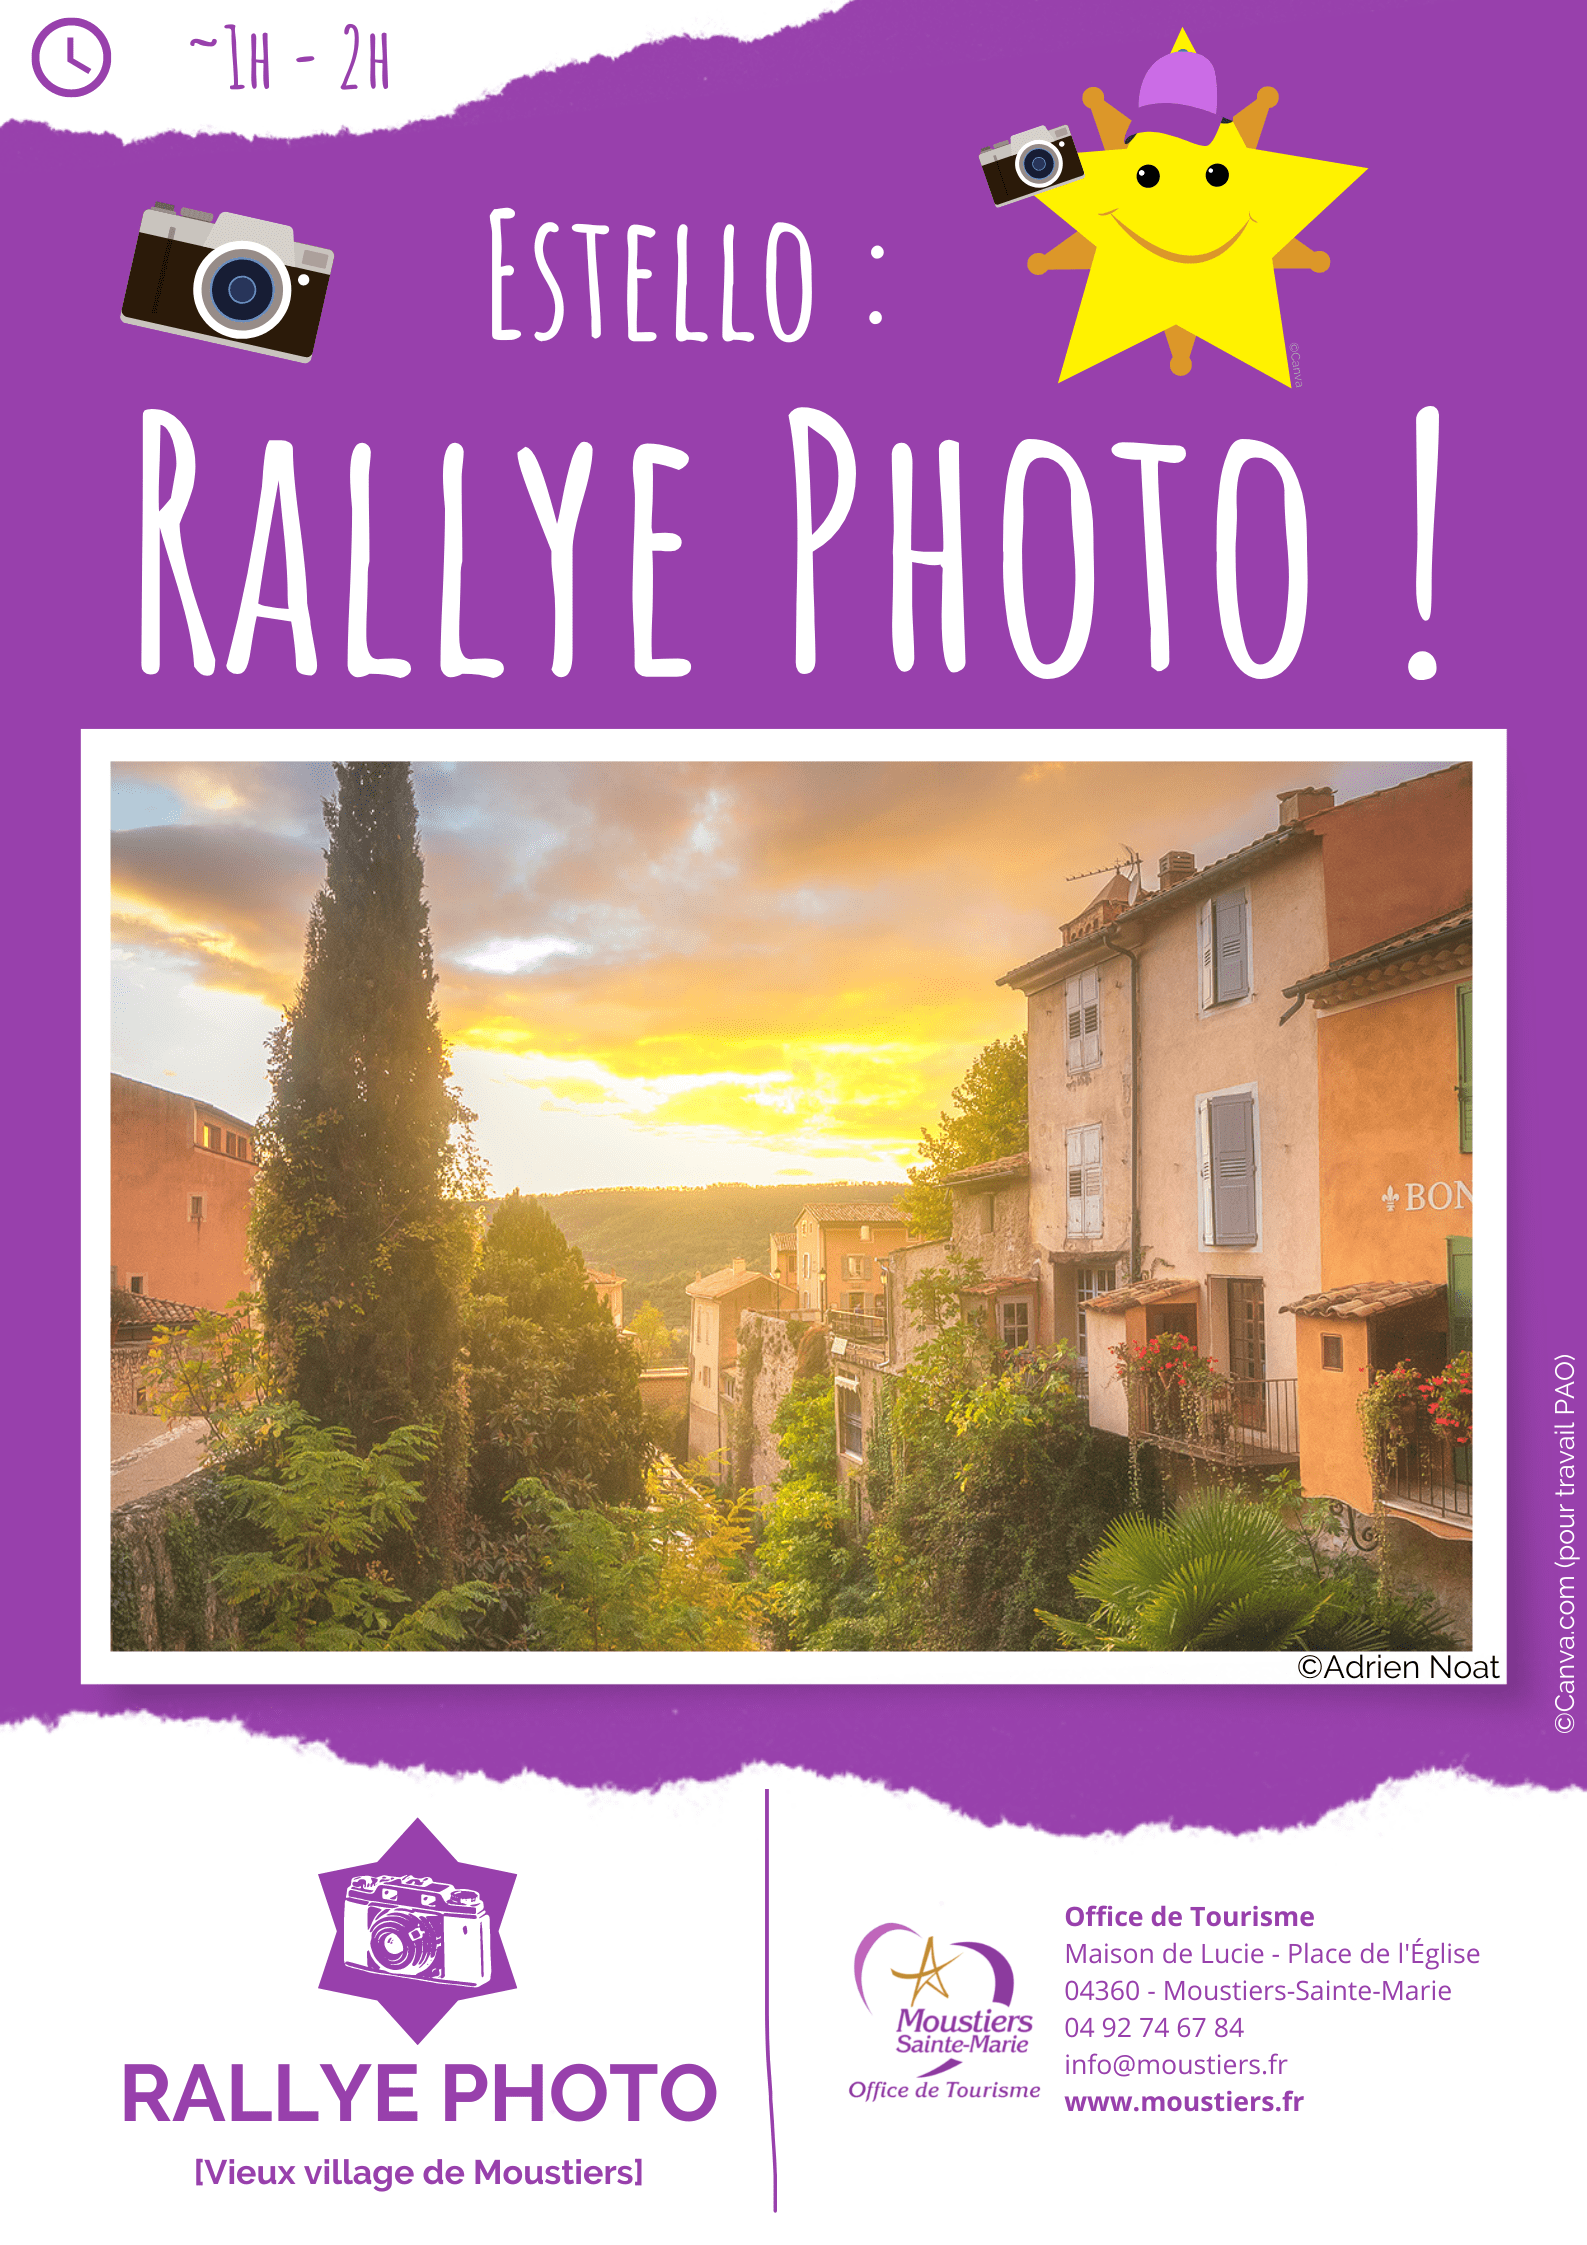 "Rallye Photo Estello" → visite Moustiers de façon originale et découvre certains des plus beaux "spots photos" du vieux village !